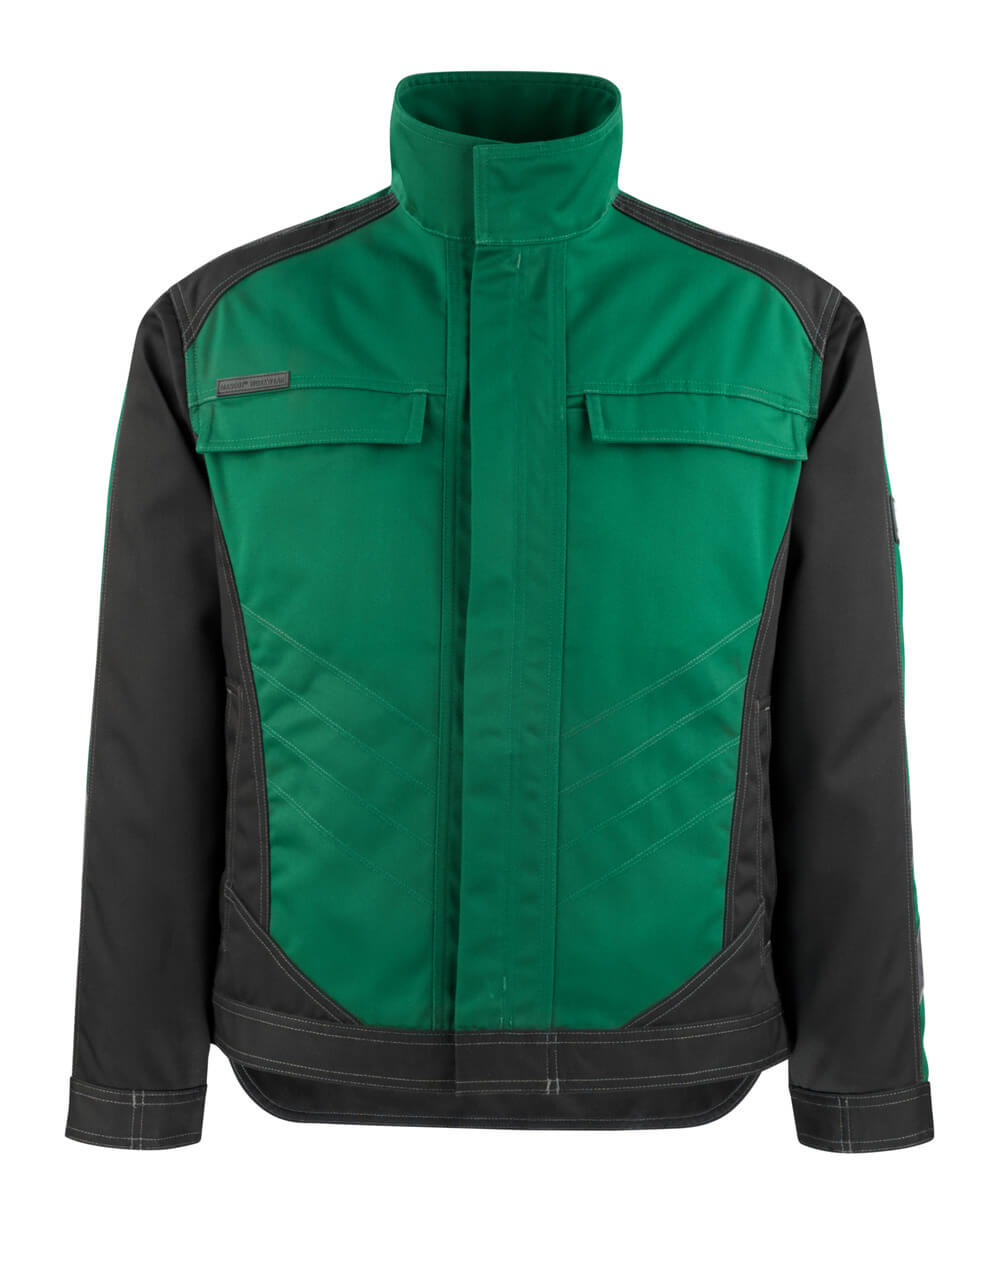 MASCOT® UNIQUE Jacke »Mainz« Gr. 2XL, grün/schwarz - erhältlich bei ♡ HUG Technik ✓